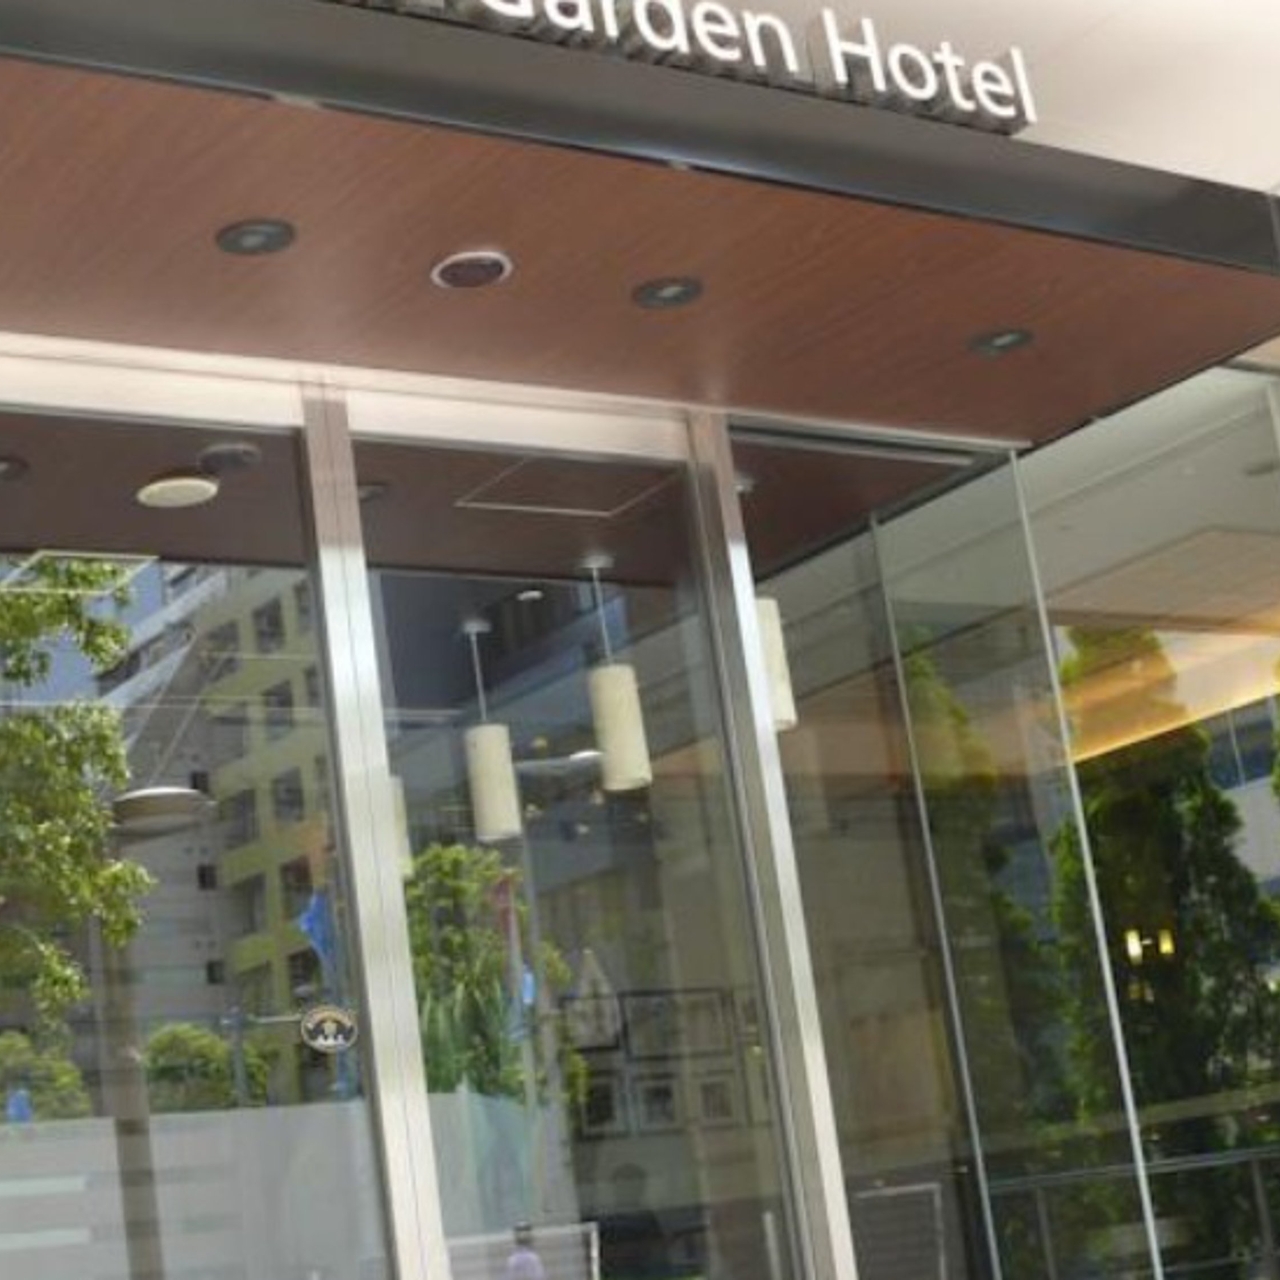 Mitsui Garden Hotel Shiodome Italia Gai 4 Hrs Star Hotel In